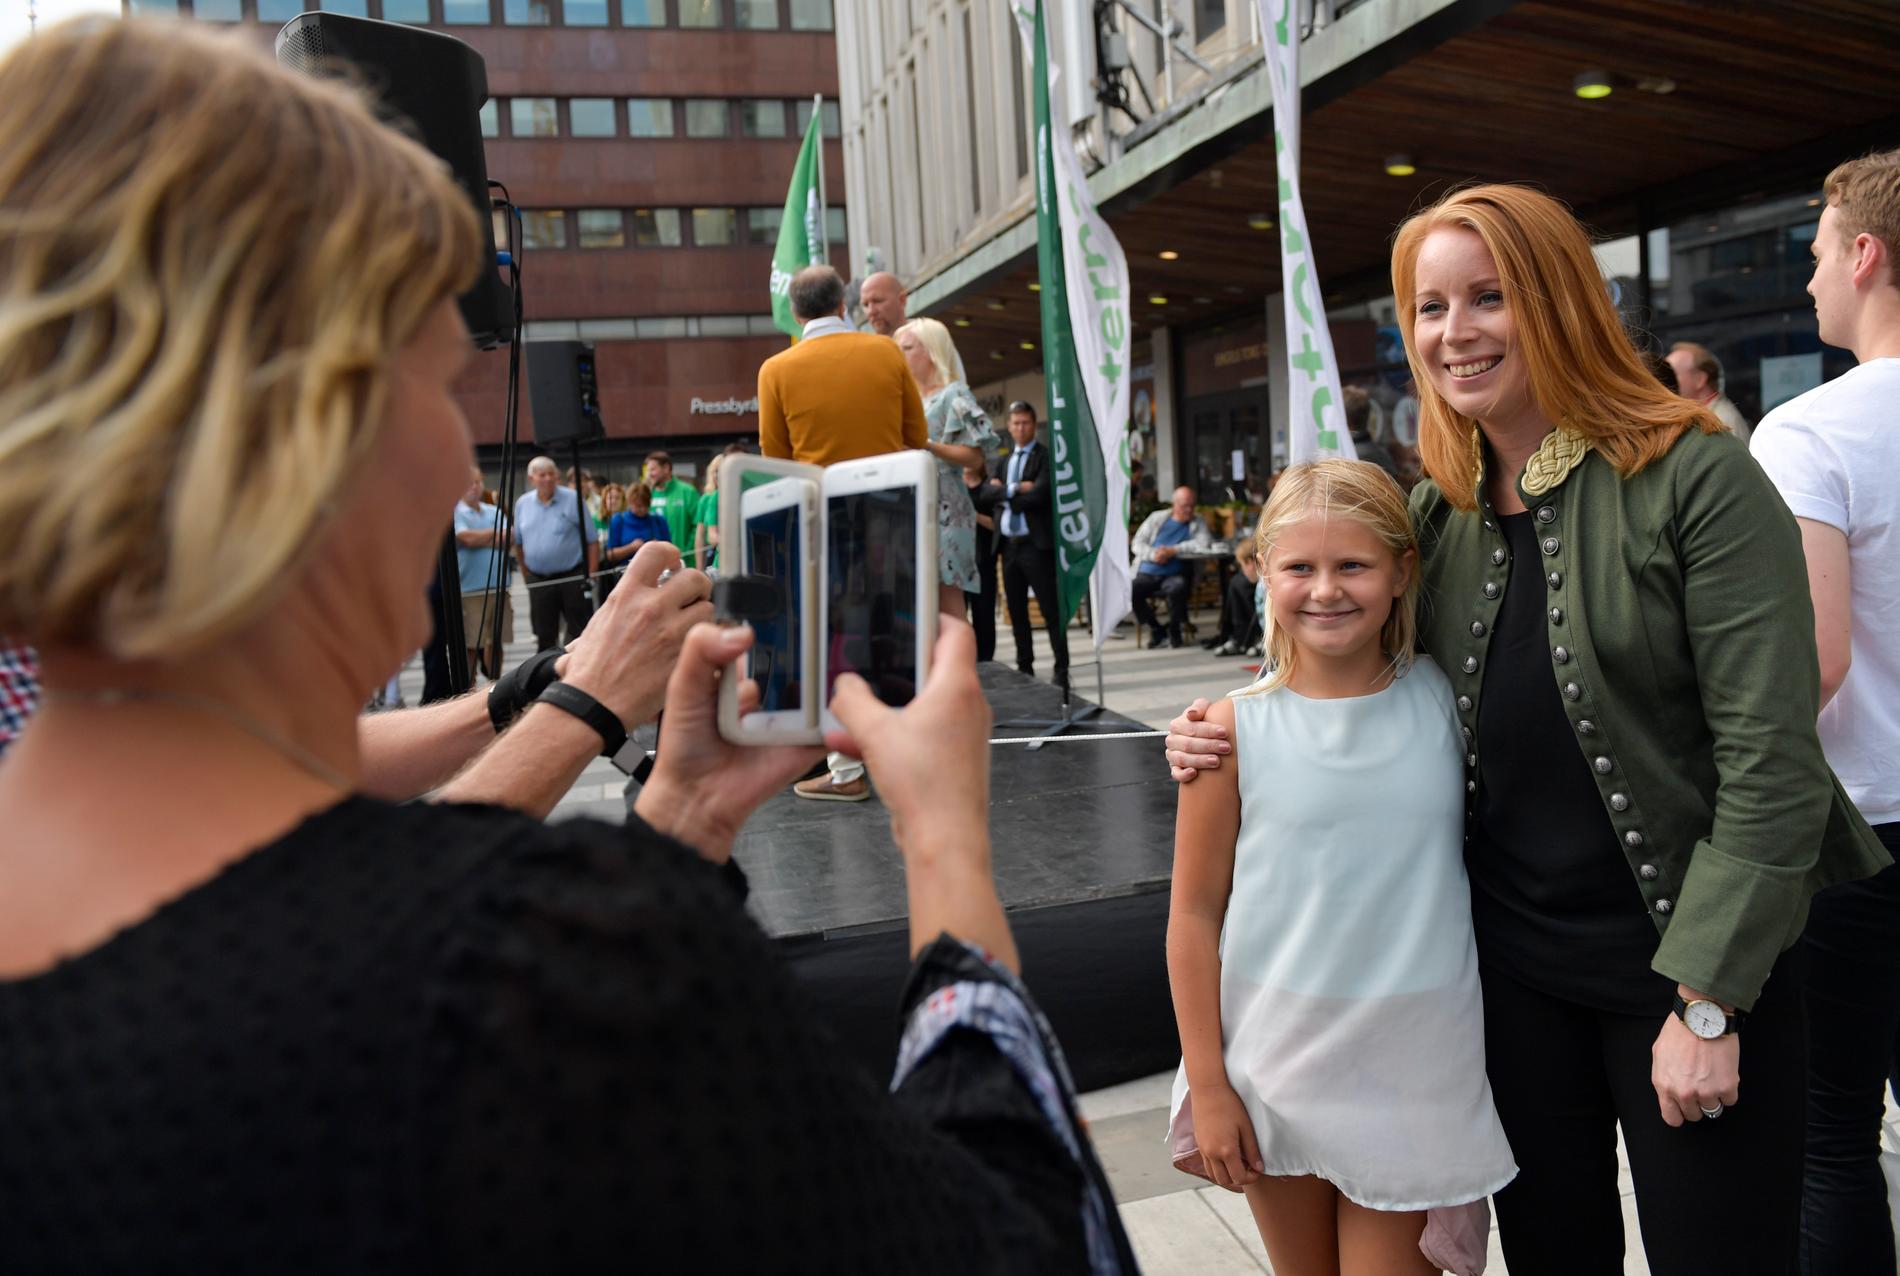 Många passade på att ta selfies tillsammans med Annie Lööf under valspurten vid Sergels torg i Stockholm.